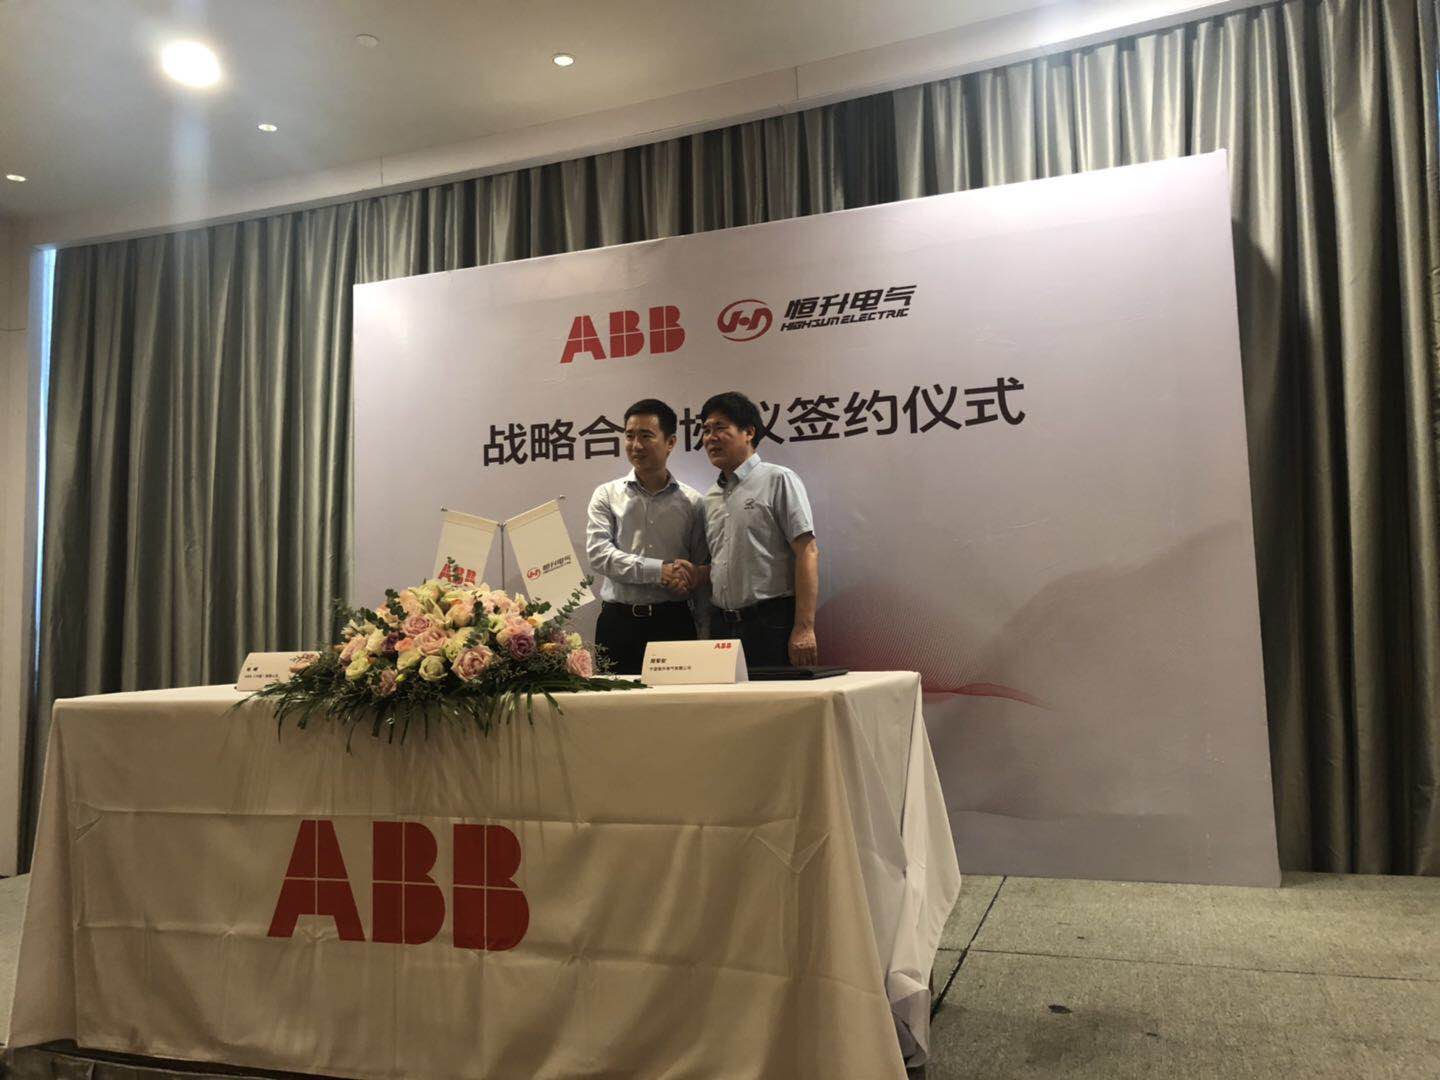 寧波恒升電氣有限公司與ABB達成授權MDmax ST低壓柜的合作協議